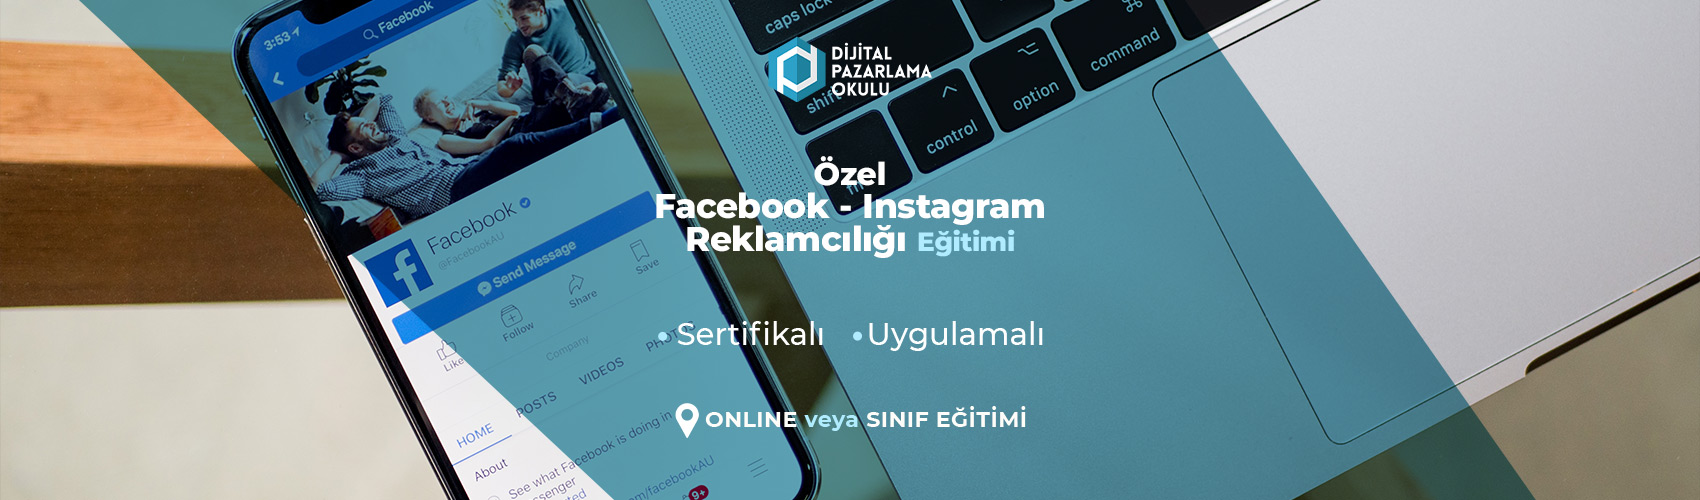 Özel Facebook Instagram Reklamcılığı Eğitimi